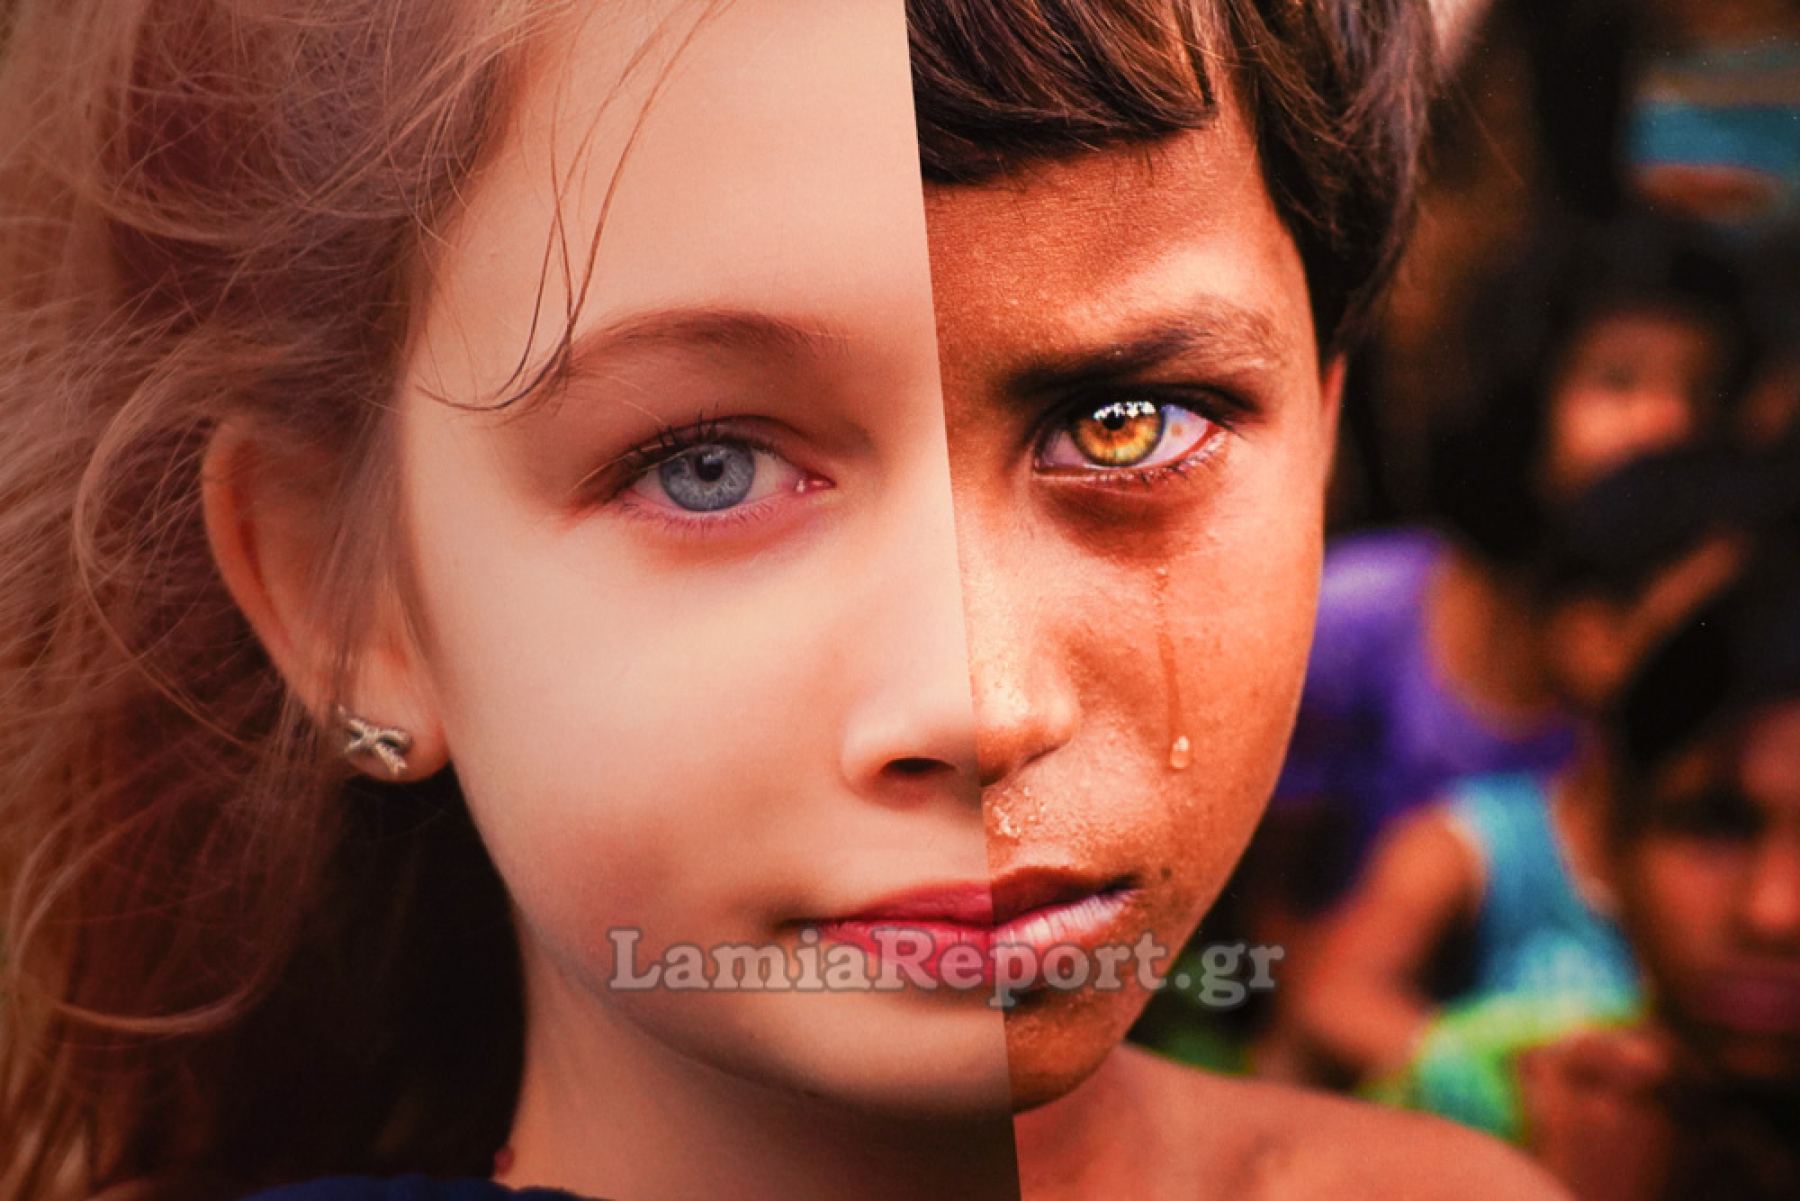 Μια συγκλονιστική έκθεση φωτογραφίας στη Λαμία - Μην τη χάσετε (ΒΙΝΤΕΟ-ΦΩΤΟ)